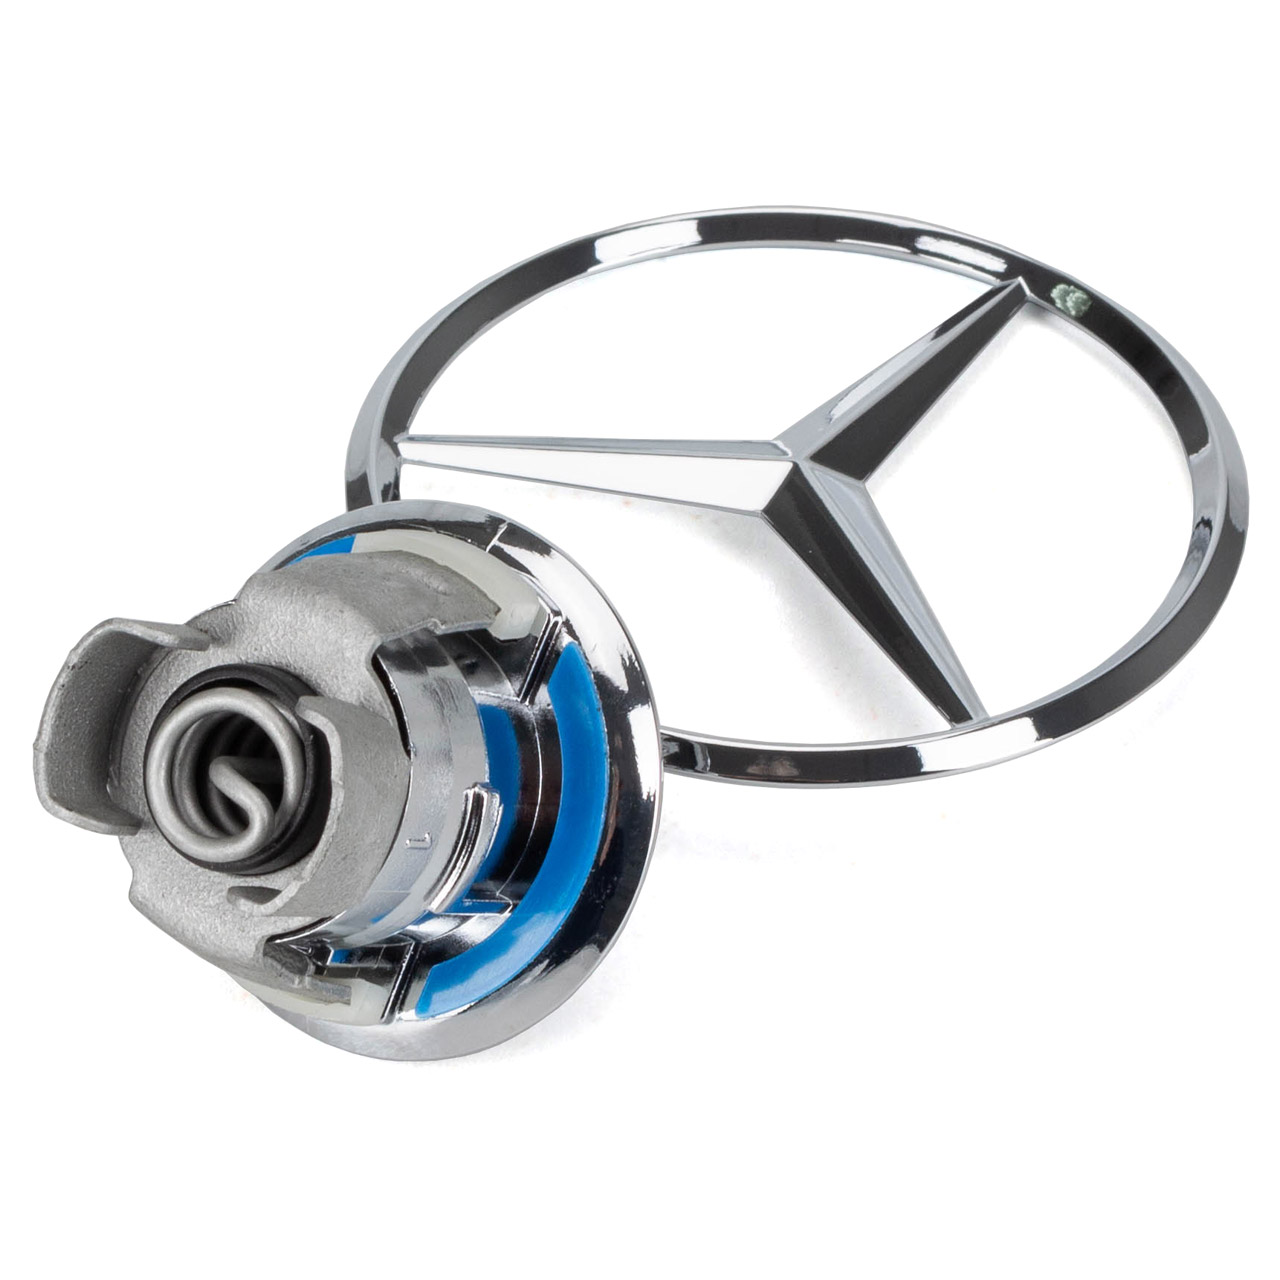 Mercedes-Benz-Emblem auf der Motorhaube eines blauen Autos Stockfotografie  - Alamy